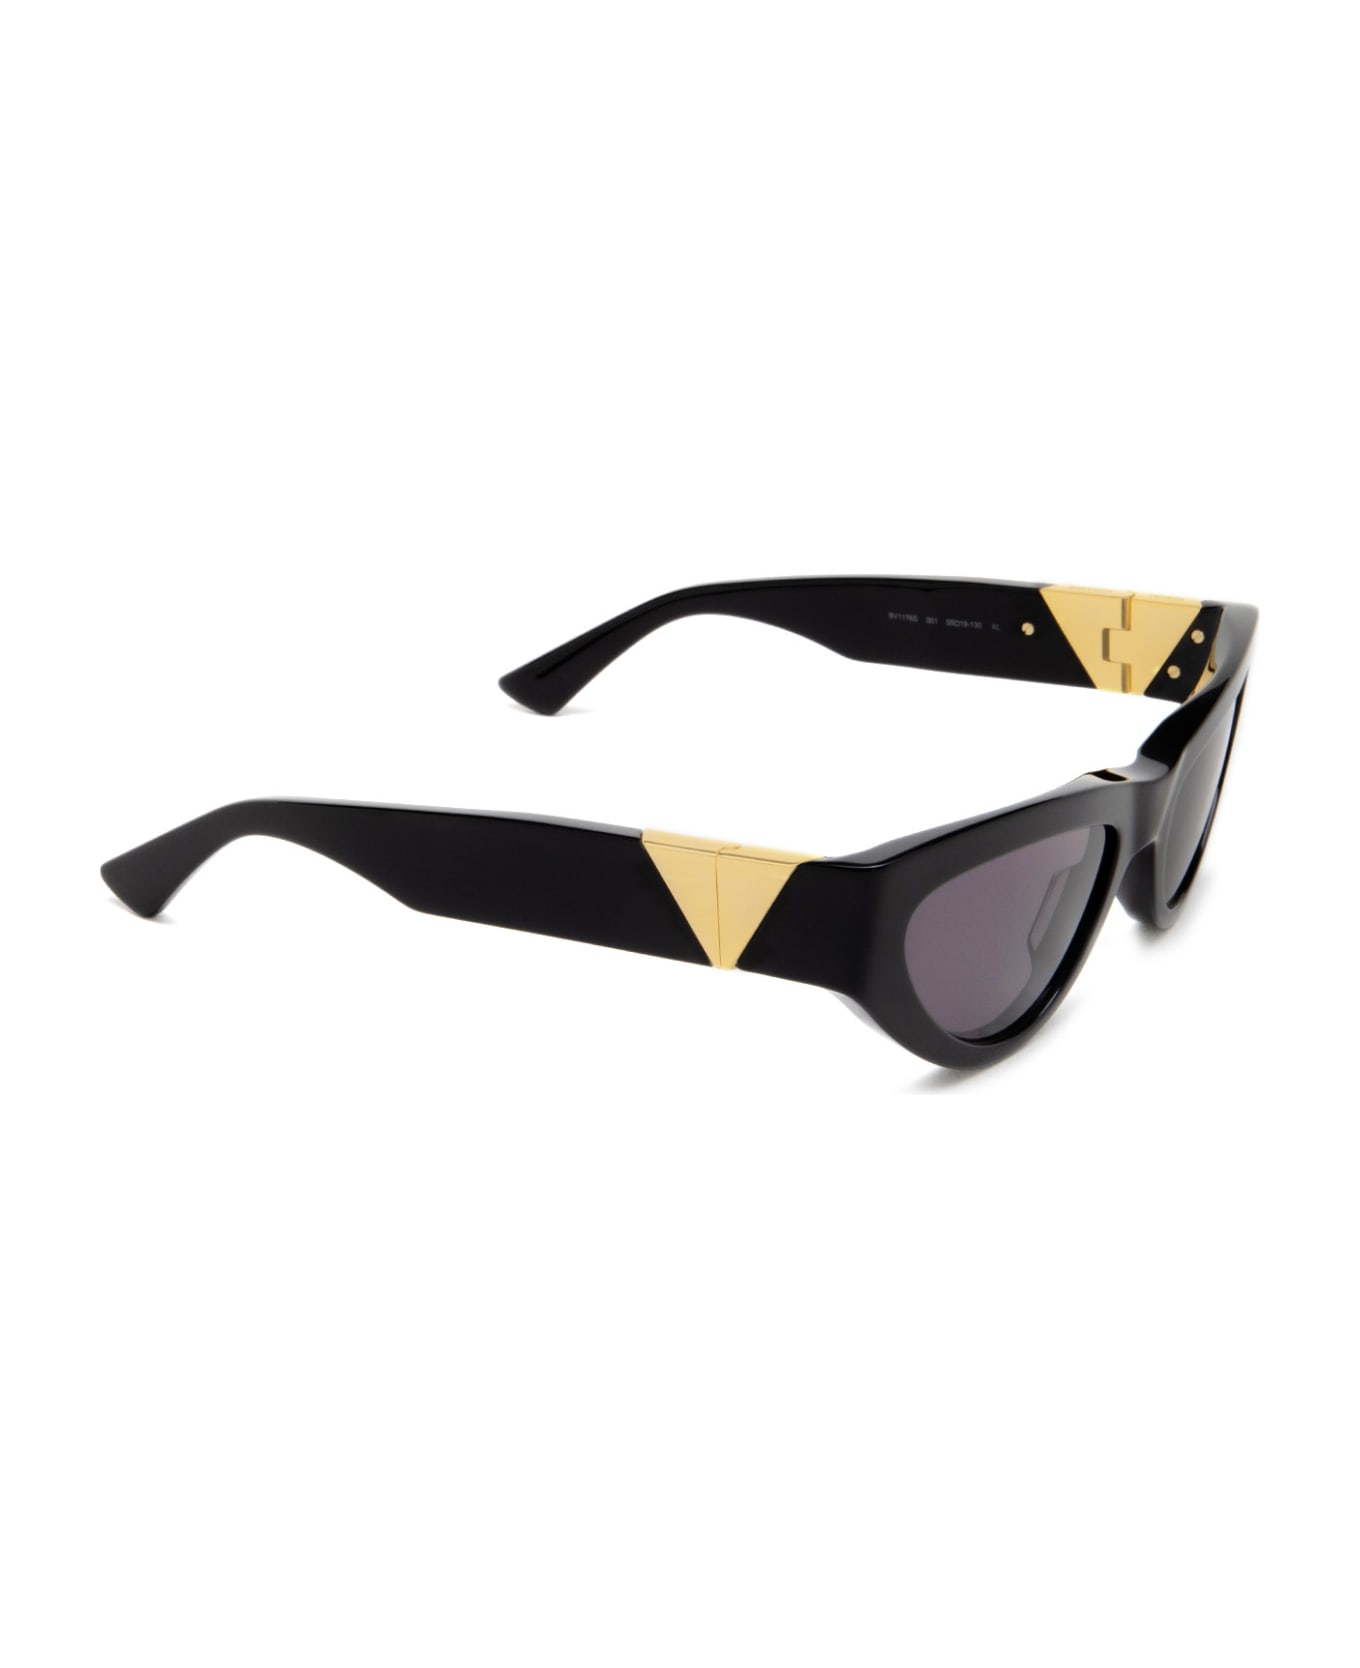 Bottega Veneta Eyewear Bv1176s Black Sunglasses - Black